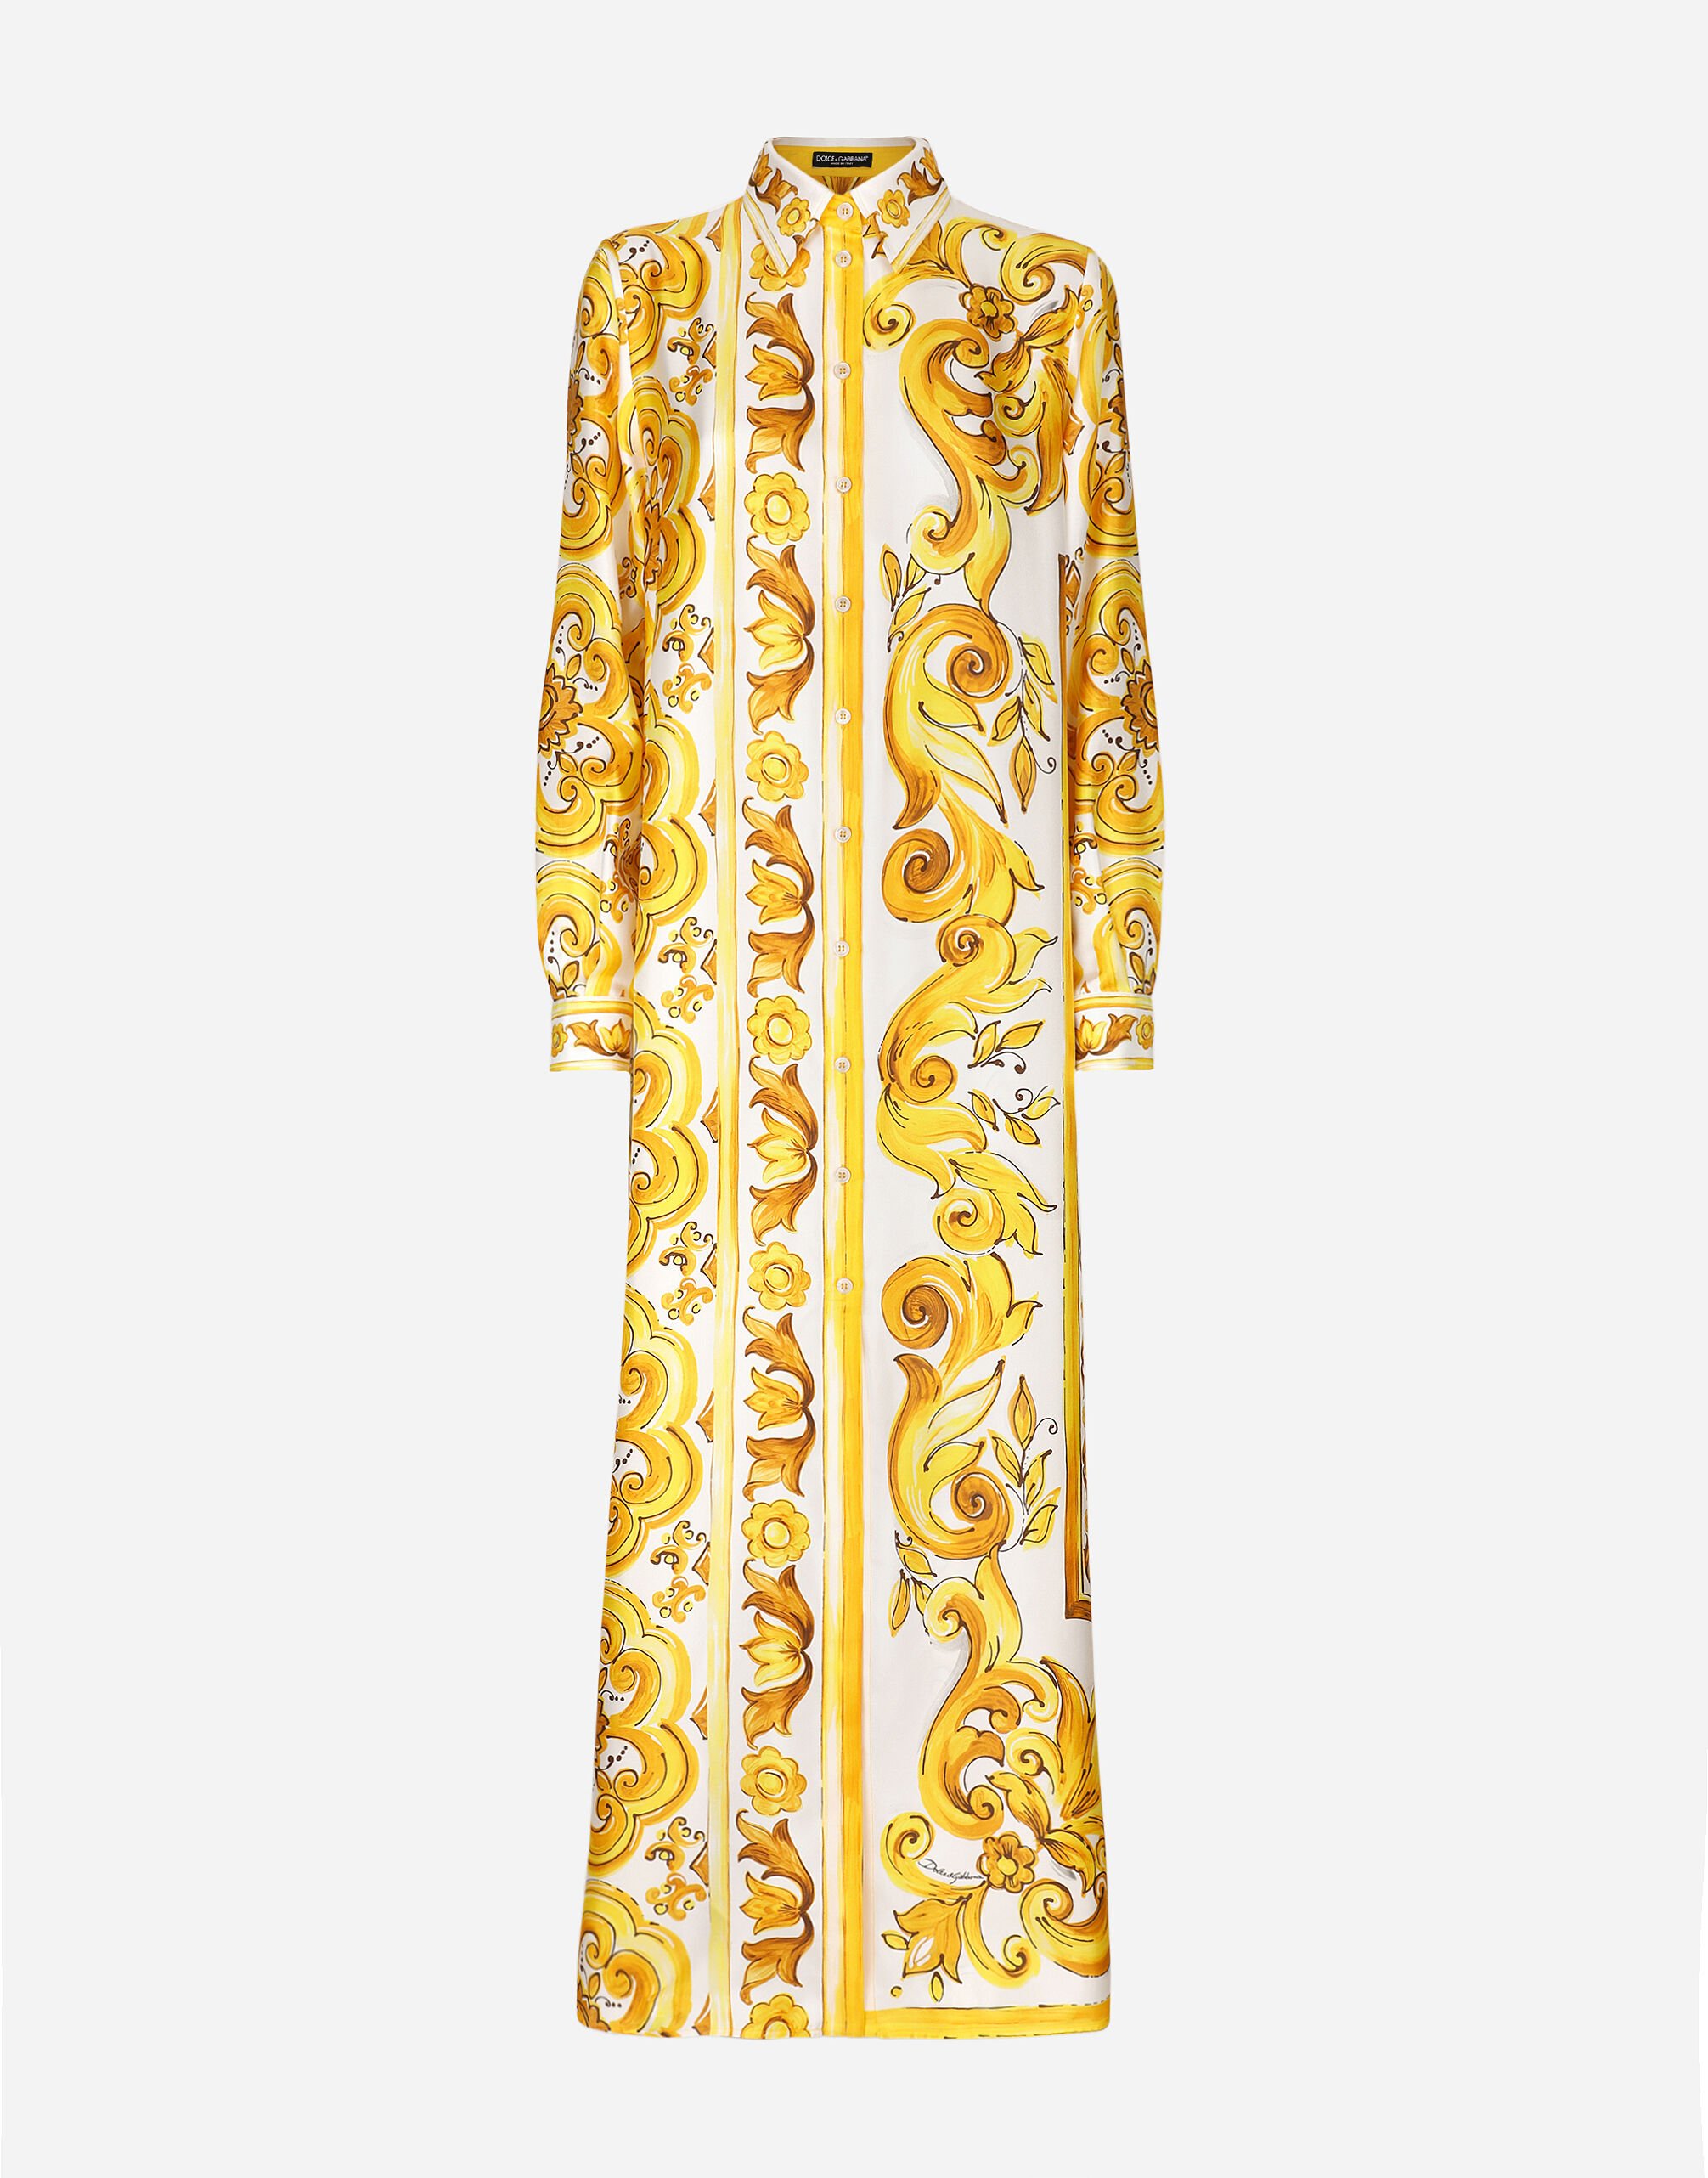 Dolce & Gabbana Camisa tipo caftán en sarga de seda con estampado Maiolica Imprima F6JHPTFPTAZ